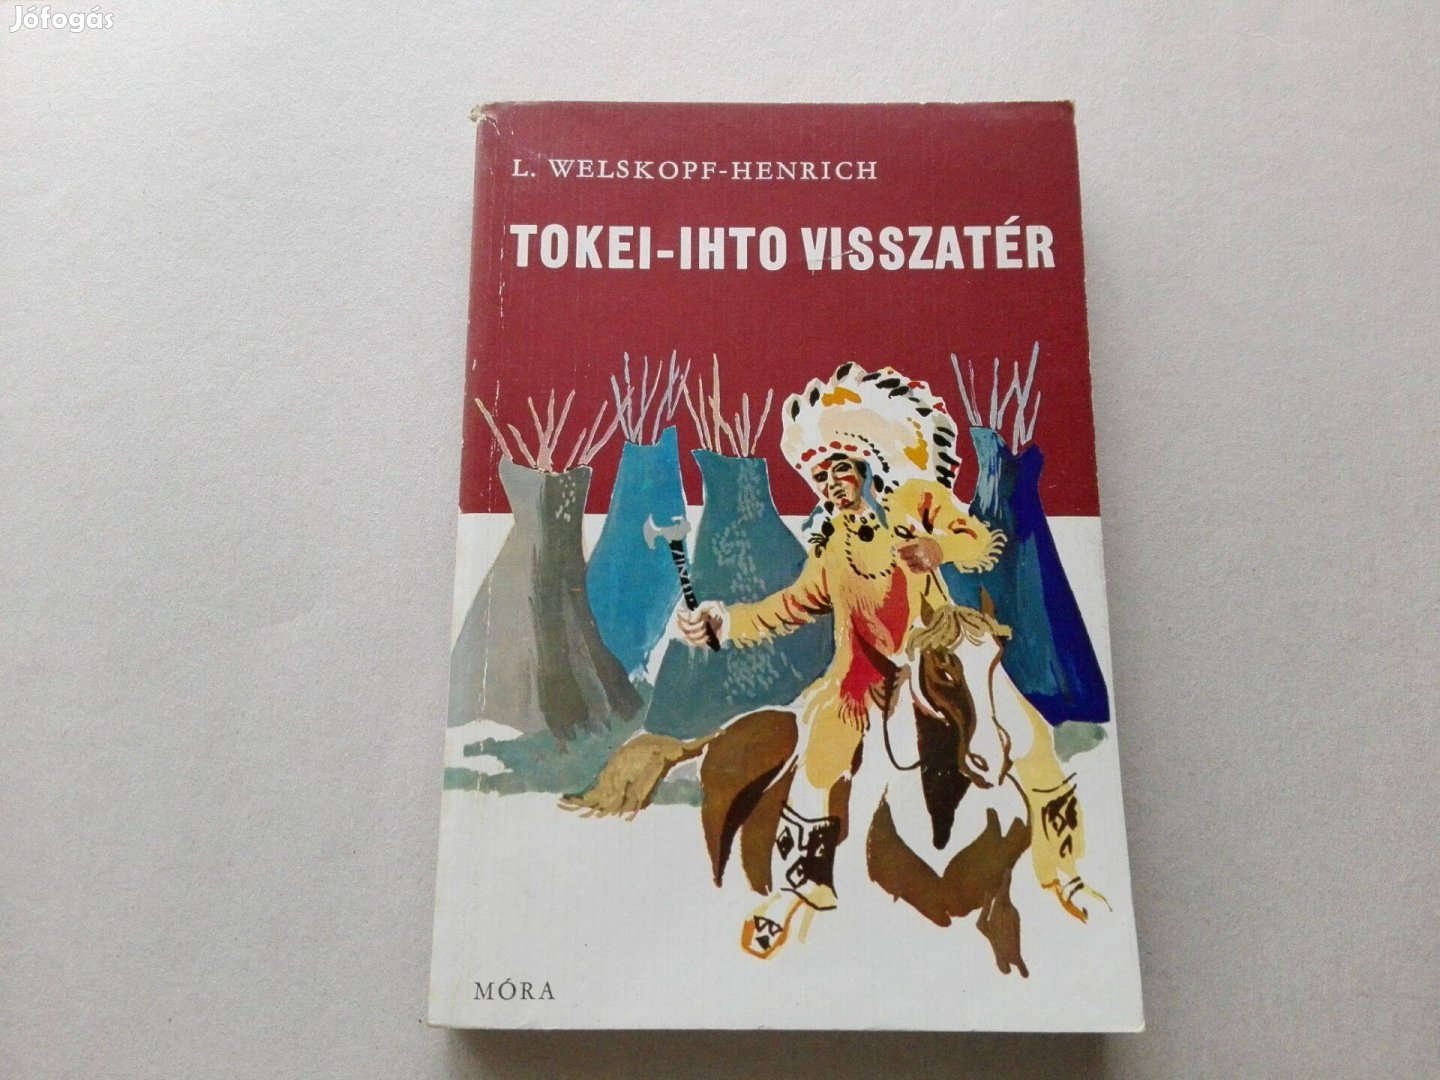 L.Welskopf-Henrich: Tokei-ihto visszatér c.könyv jó állapotban eladó!